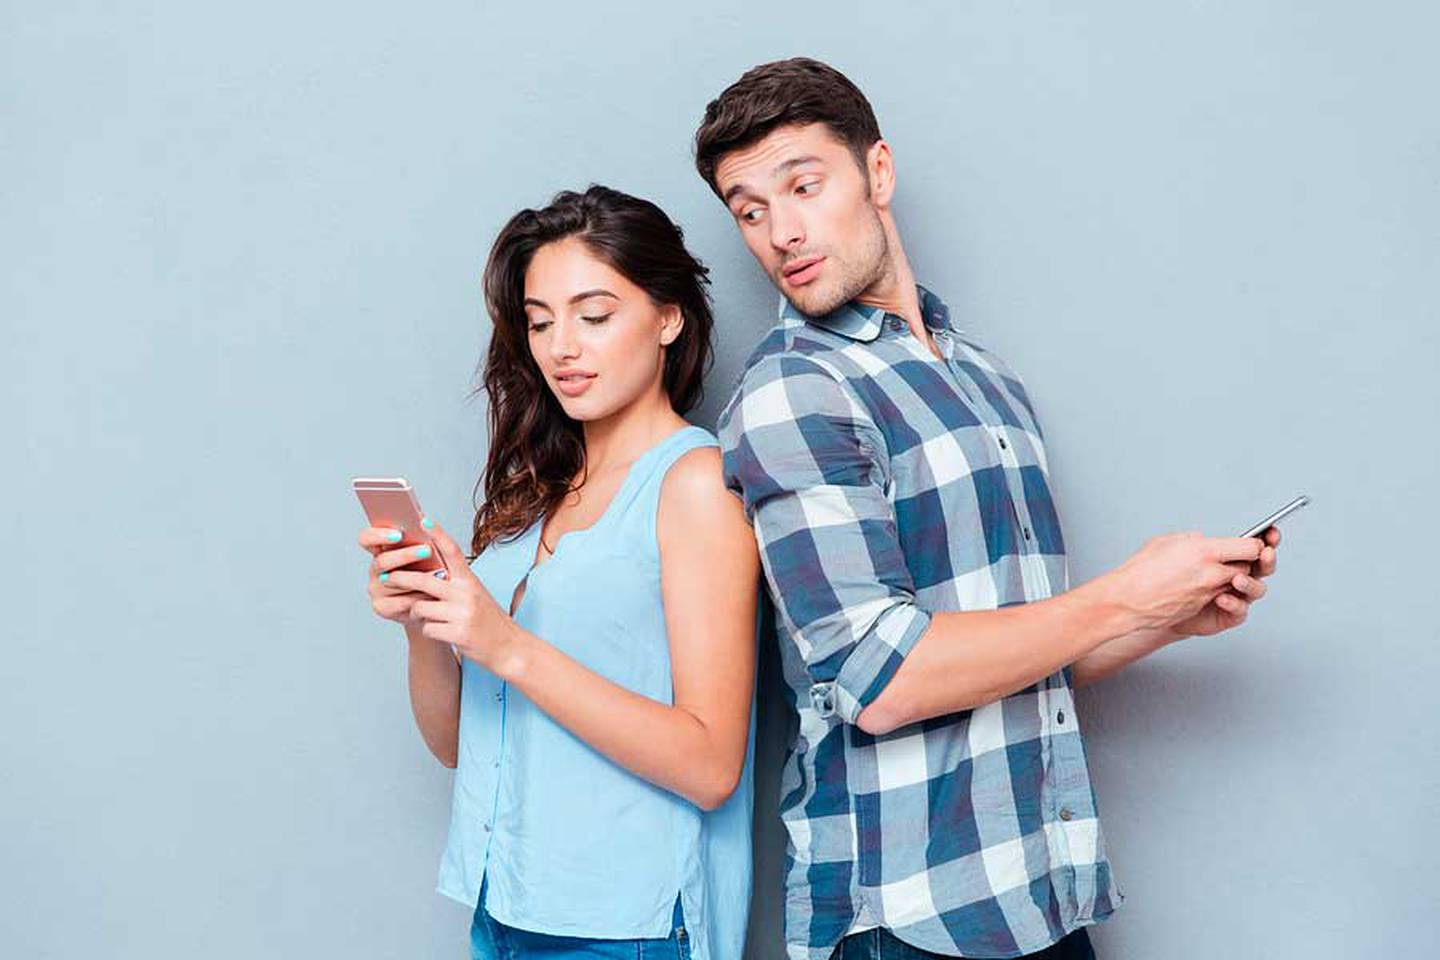 Celos y futuros problemas por monitorear las redes sociales de tu pareja.